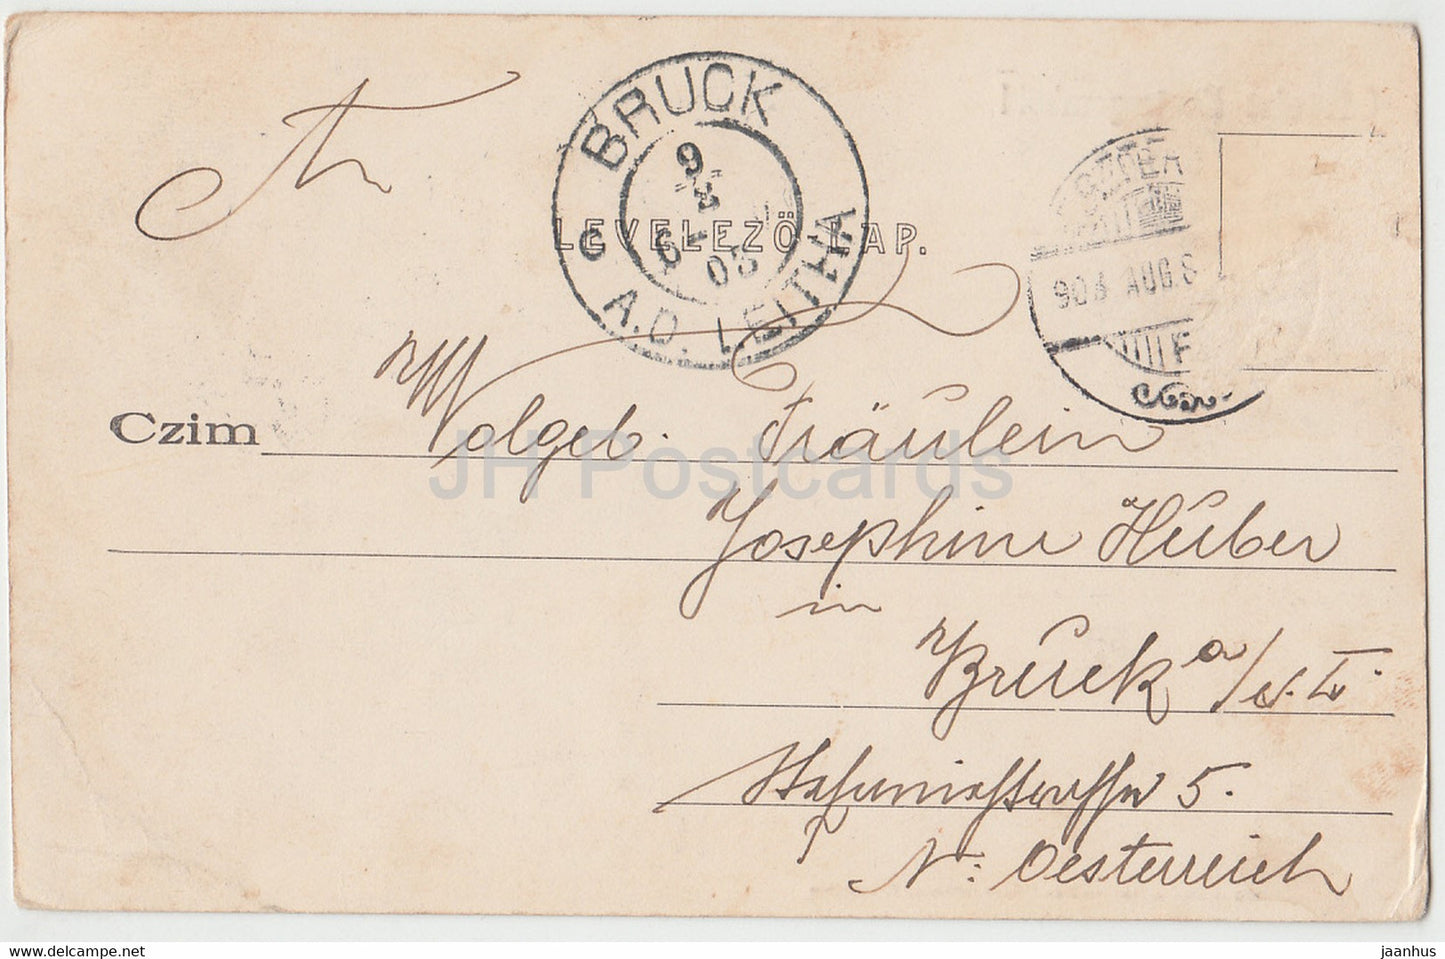 Udvozlet Esztergombol - Esztergom - old postcard - 1903 - Hungary - used